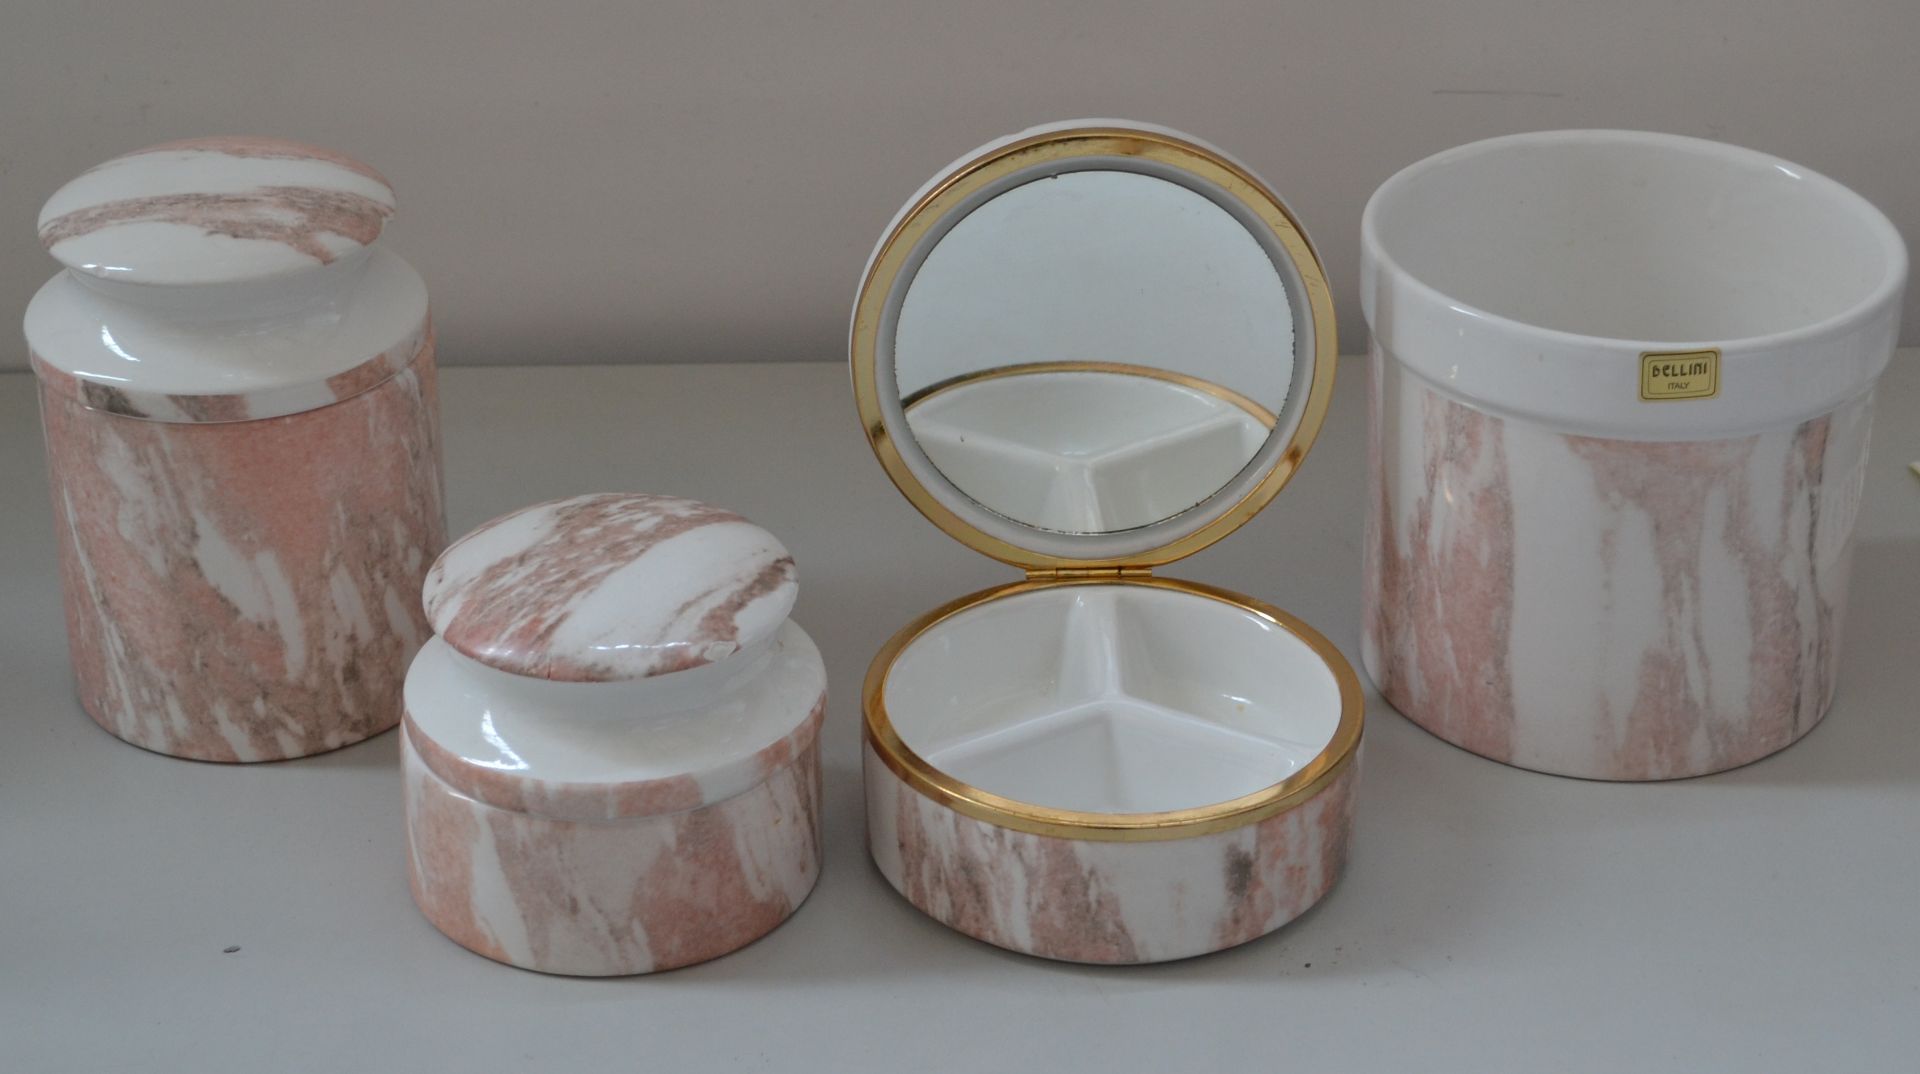 1 x Bellini Ceramic Pots and Jewelry Box - Ref J2163 - CL314